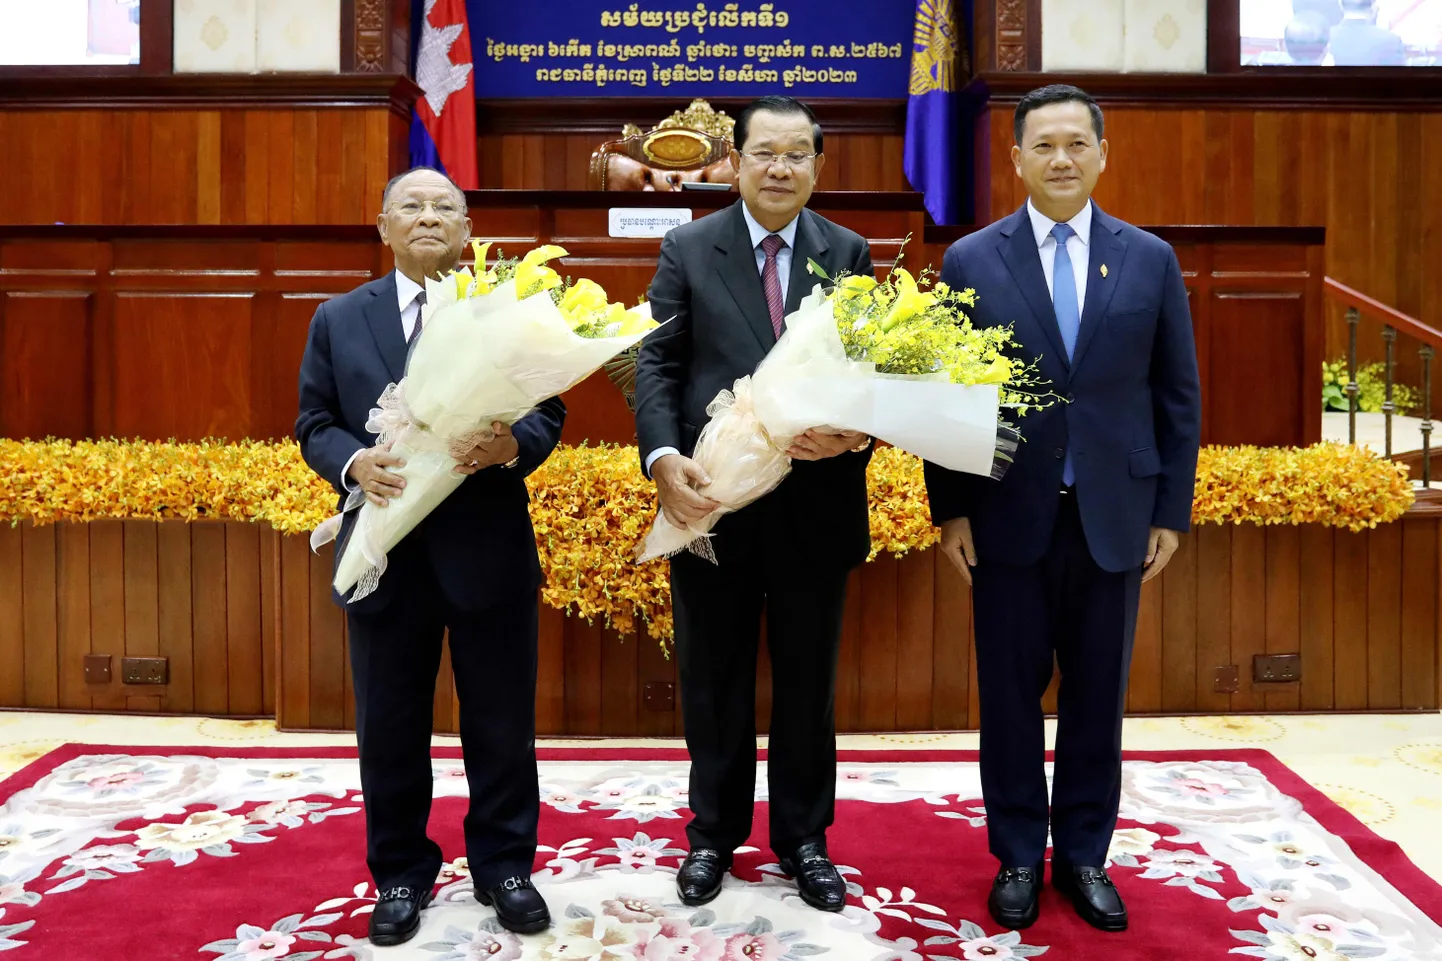 Sel 22. augustil tehtud ja avaldatud fotol on Kambodža vastne peaminister Hun Manet (paremal), tema kõrval isa ja kauane ekspeaminister Hun Sen ning rahvusassamblee esimees Heng Samrin.